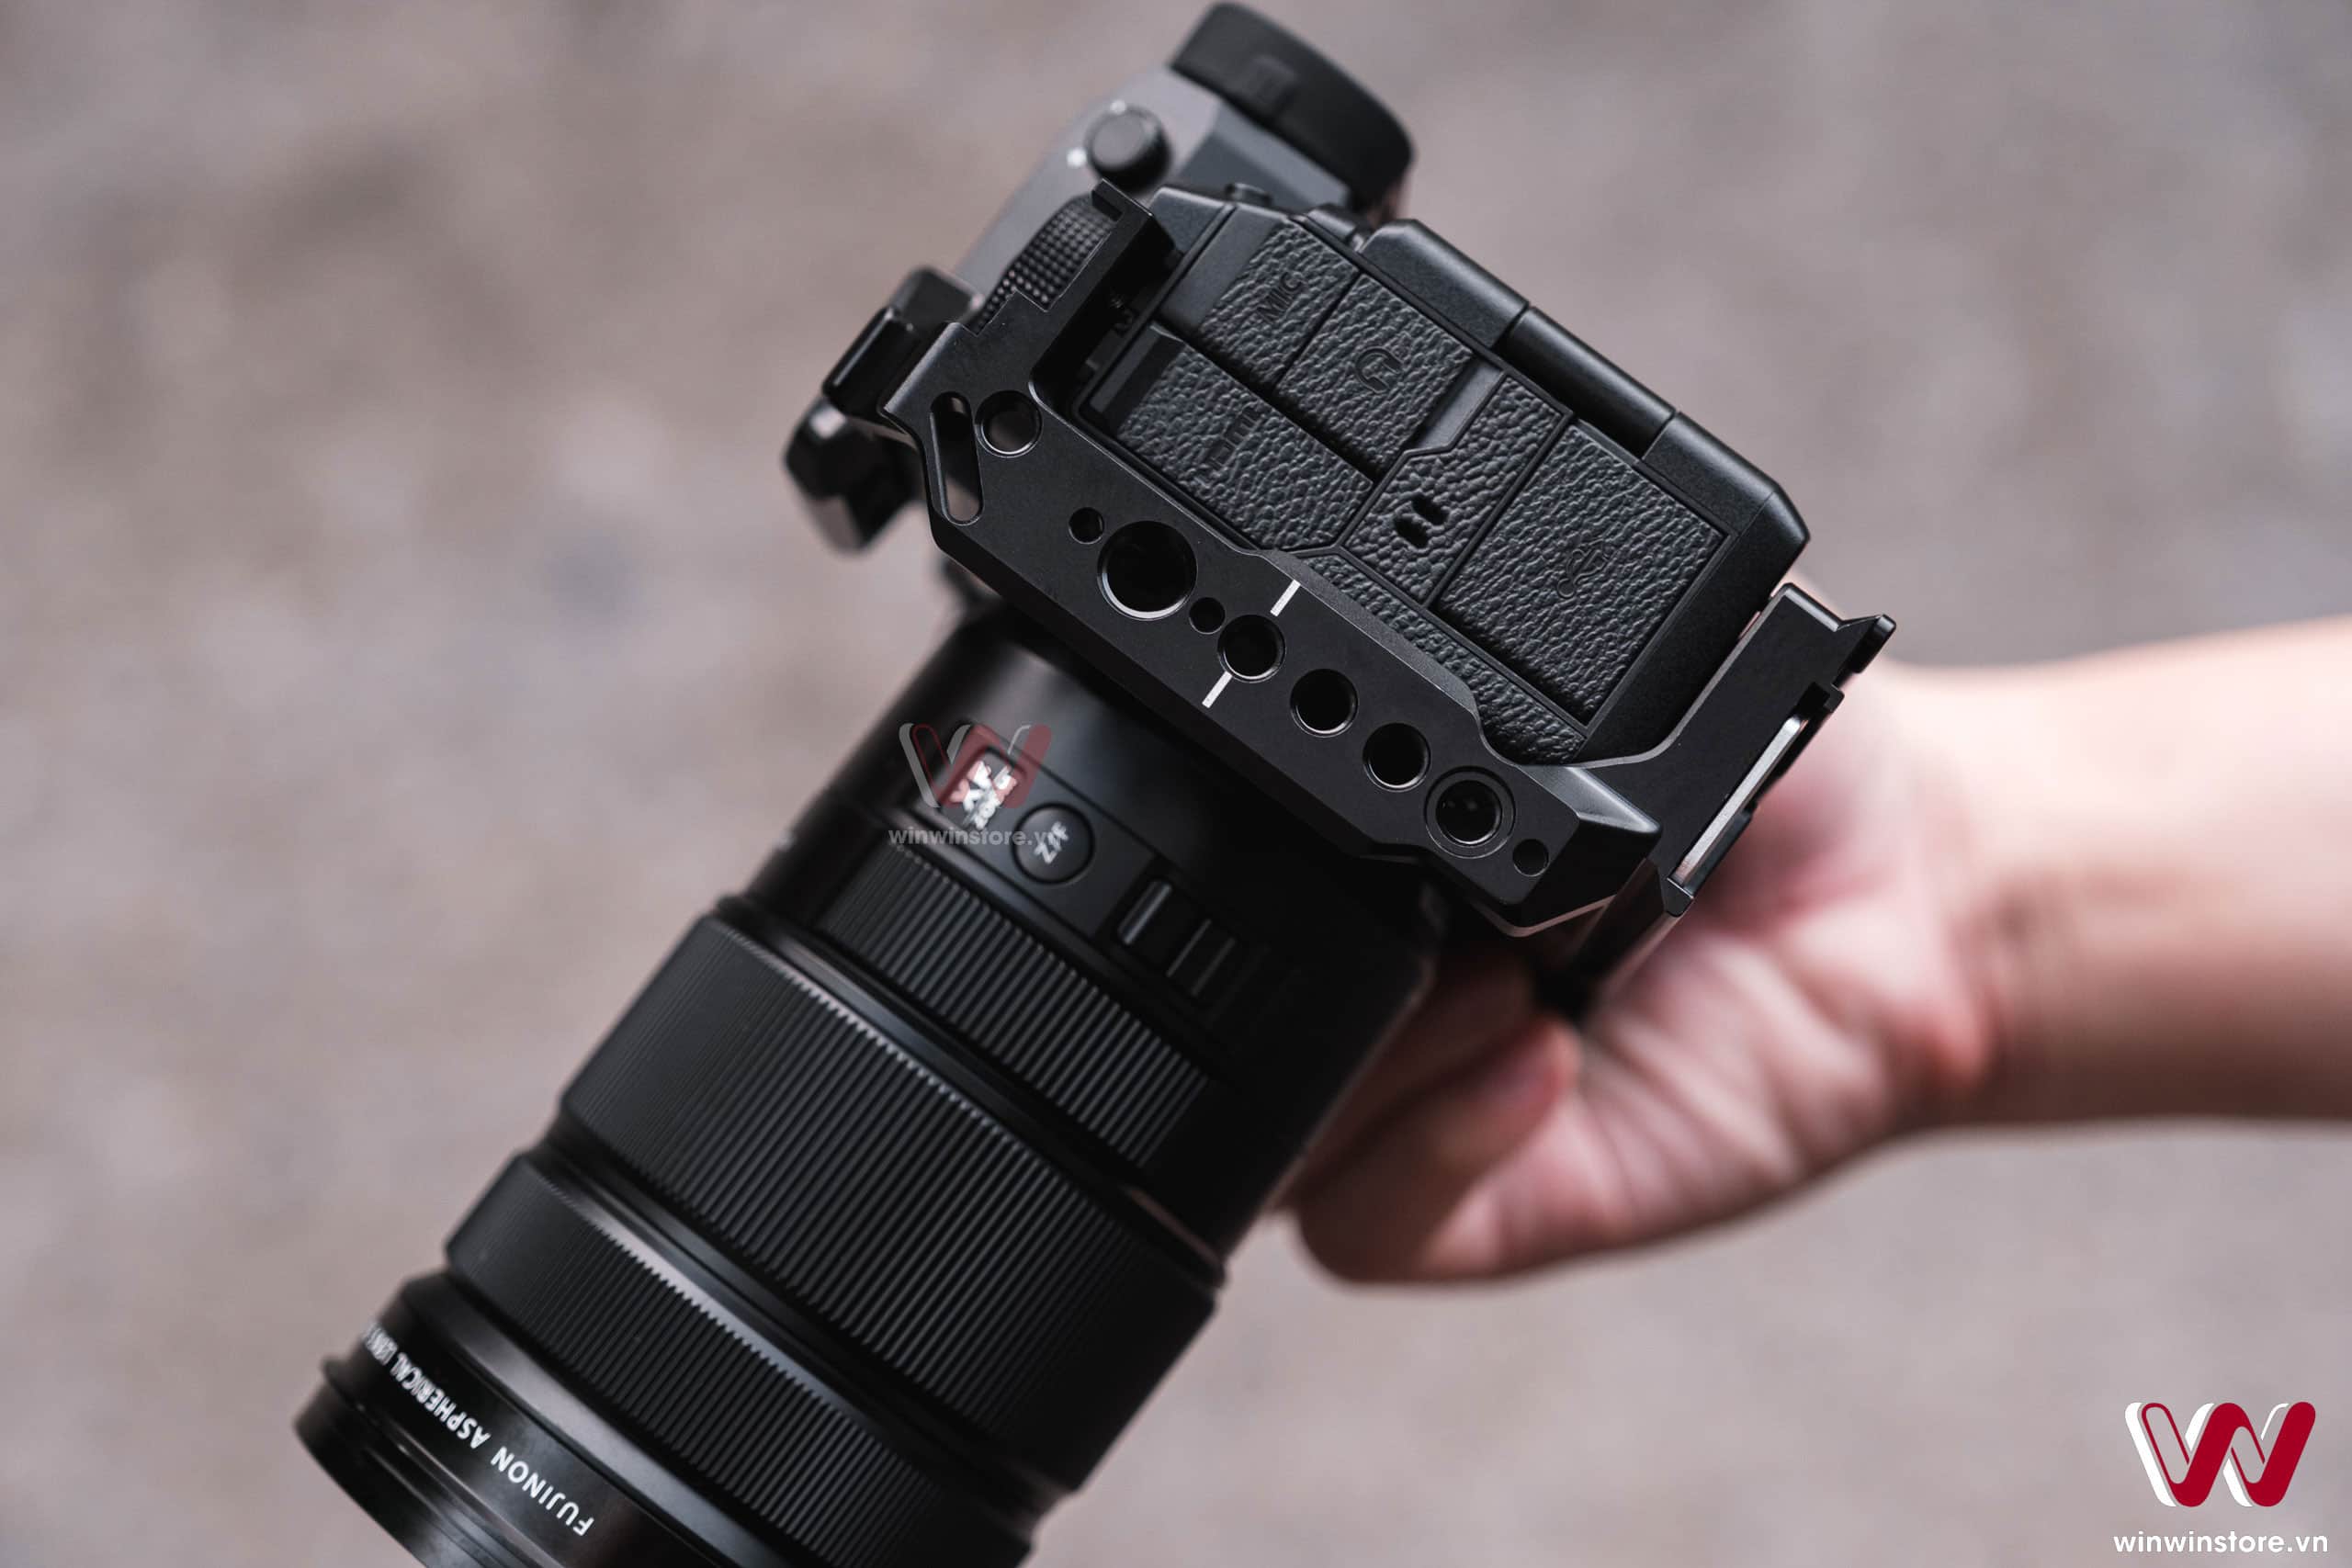 Trên tay khung SmallRig dành cho máy ảnh X-H2s, vừa khít và hoàn thiện cứng cáp với nhiều lỗ ốc cho phụ kiện